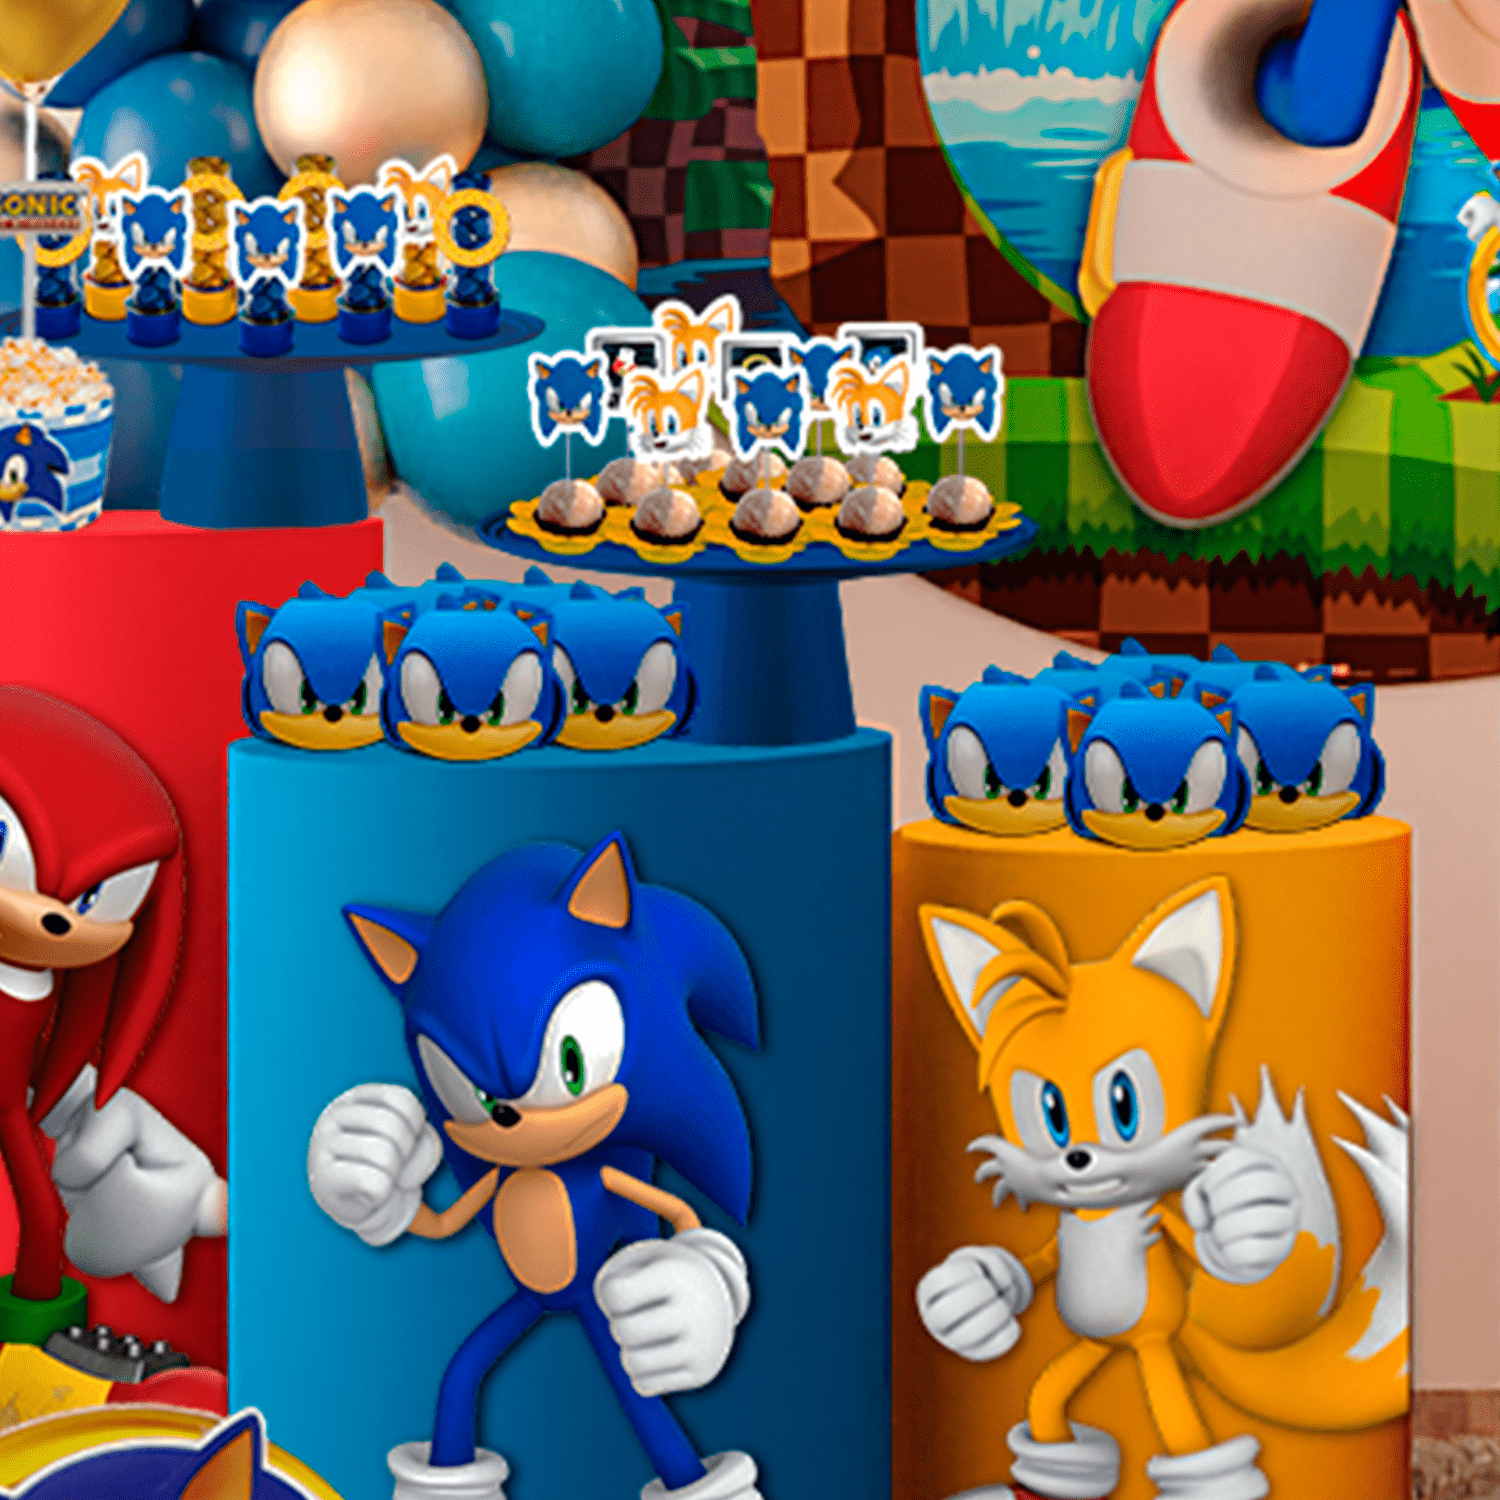 Sonic - Novo Sonic 6 PNG Imagens e Moldes.com.br  Sonic the hedgehog,  Festas de aniversário do sonic, Boneco do sonic